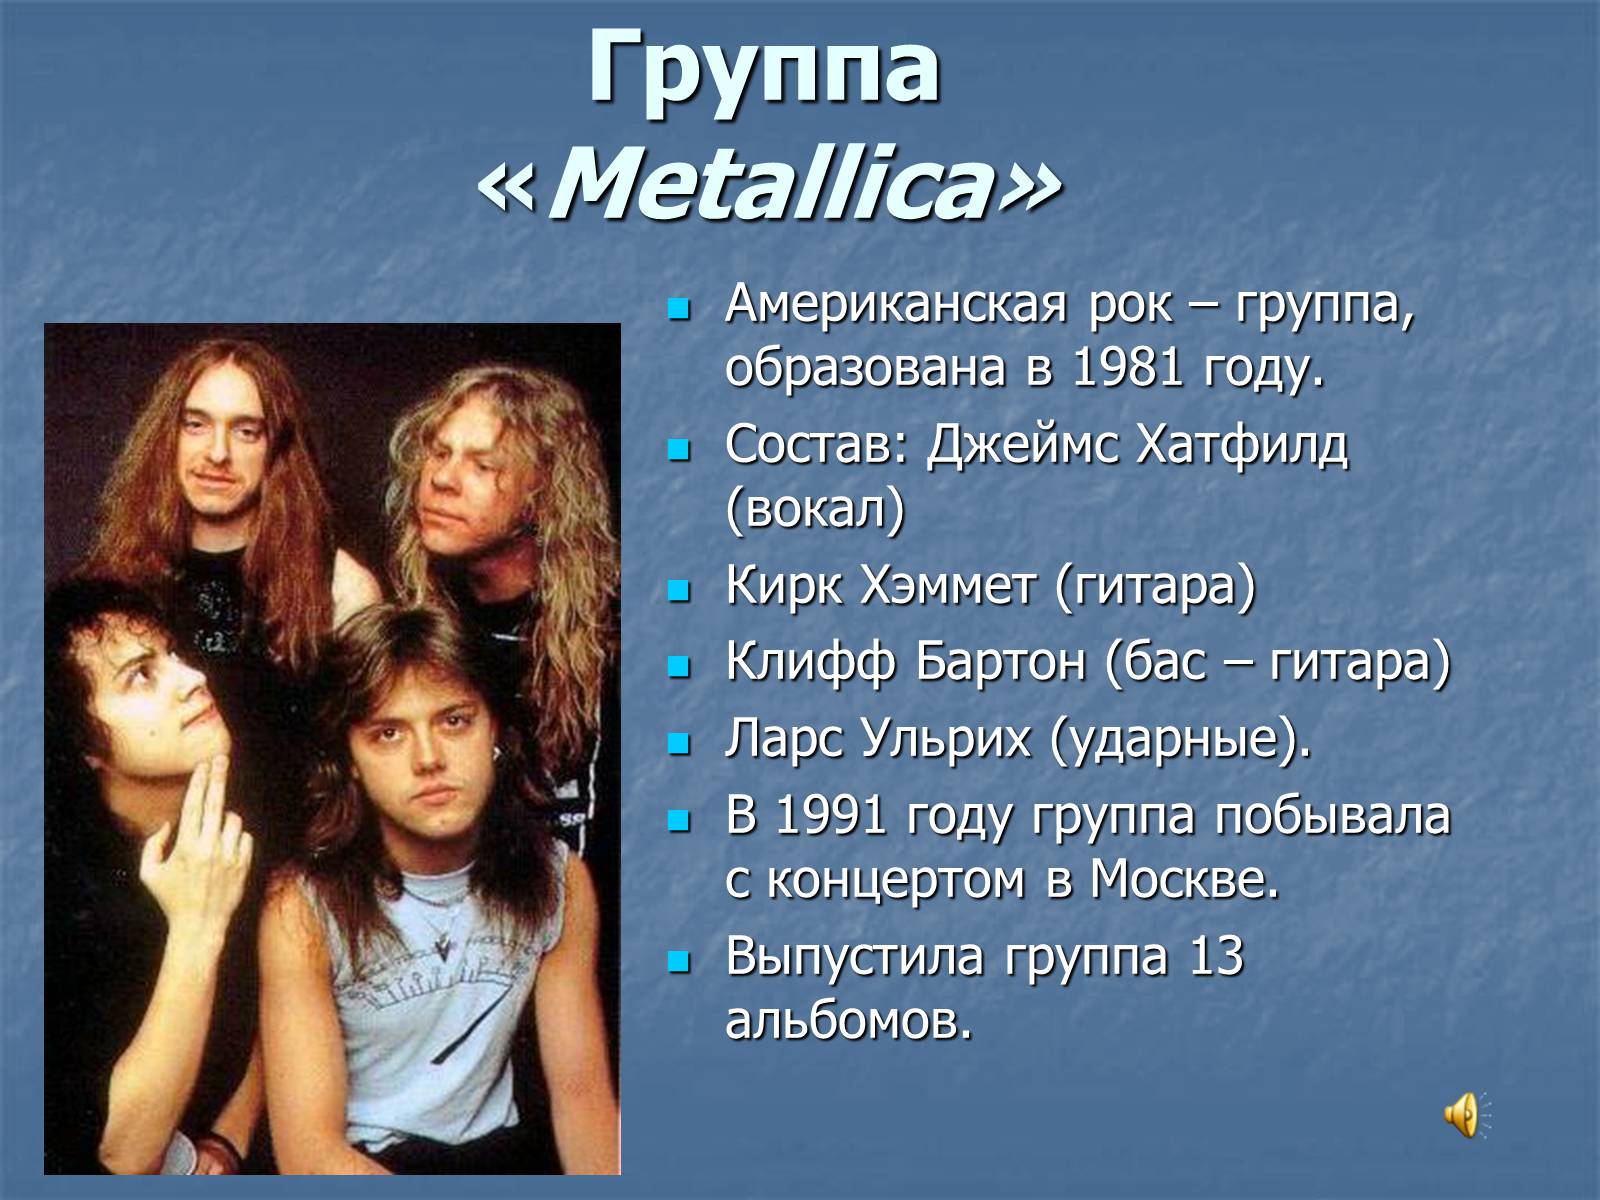 Сообщение о любимой группе. Презентация на тему рок. Группа Metallica. Презентация рок группы. Сообщение о рок группе.